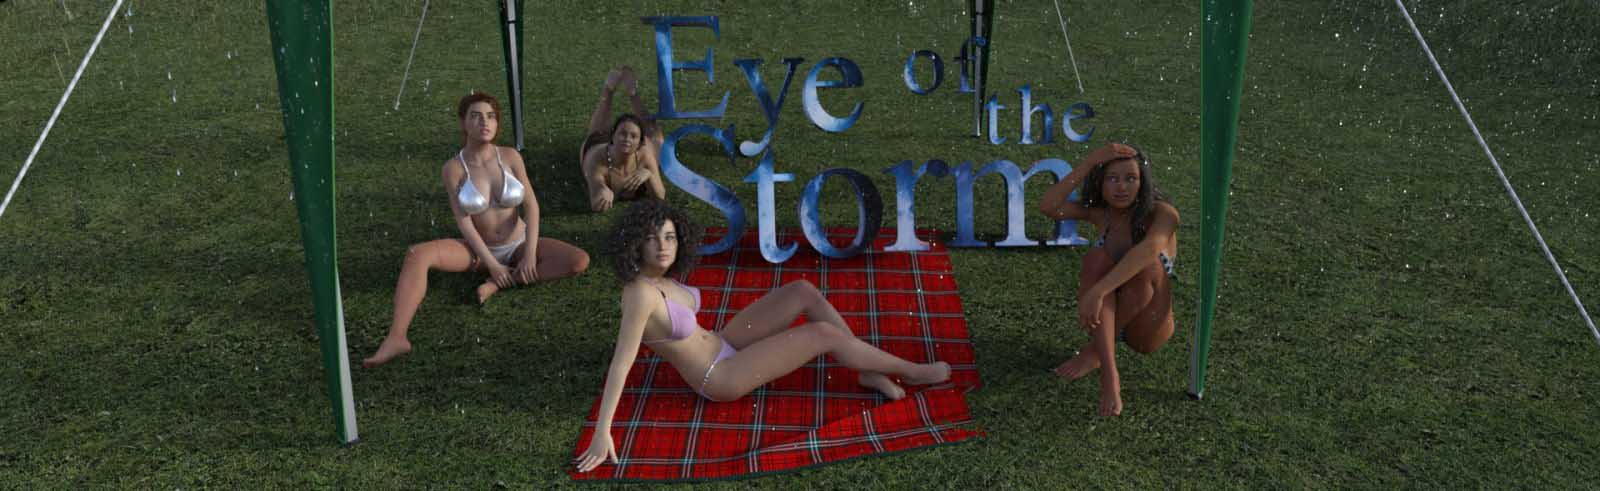 Eye of the Storm 3d jeu sexuel, 3d jeu adulte, jeu xxx